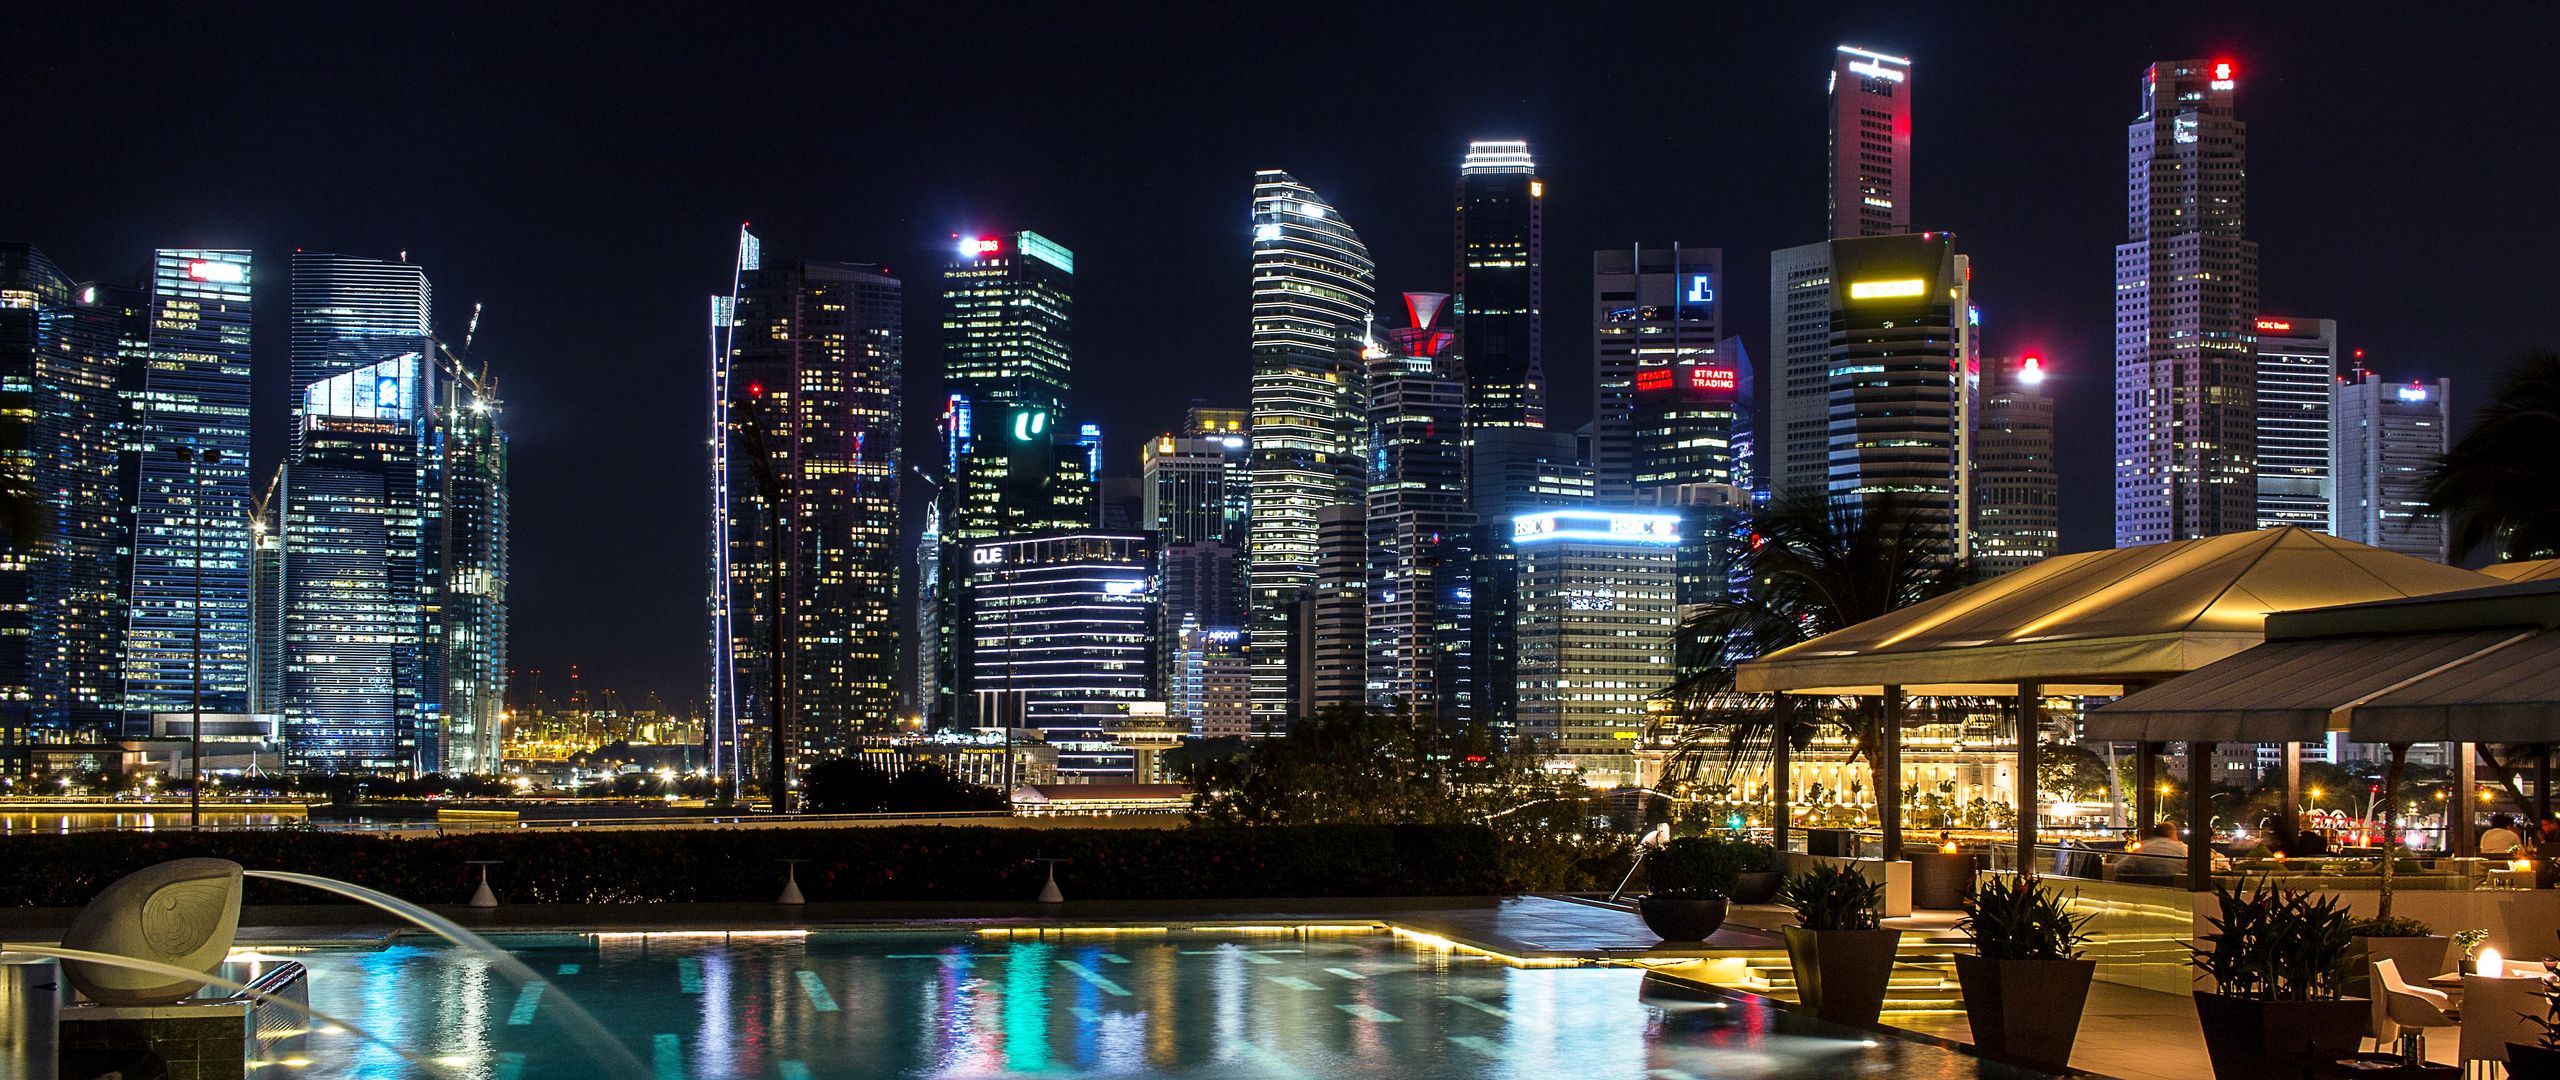 Lấy ngay hình nền tải về 2560x1080 với sự trình diễn ánh sáng độc đáo của Singapore vào buổi tối. Điểm nhấn của ánh đèn pha lê và những bức tường không gian đầy mê hoặc, hứa hẹn sẽ khiến bạn thích thú mỗi khi sử dụng máy tính.